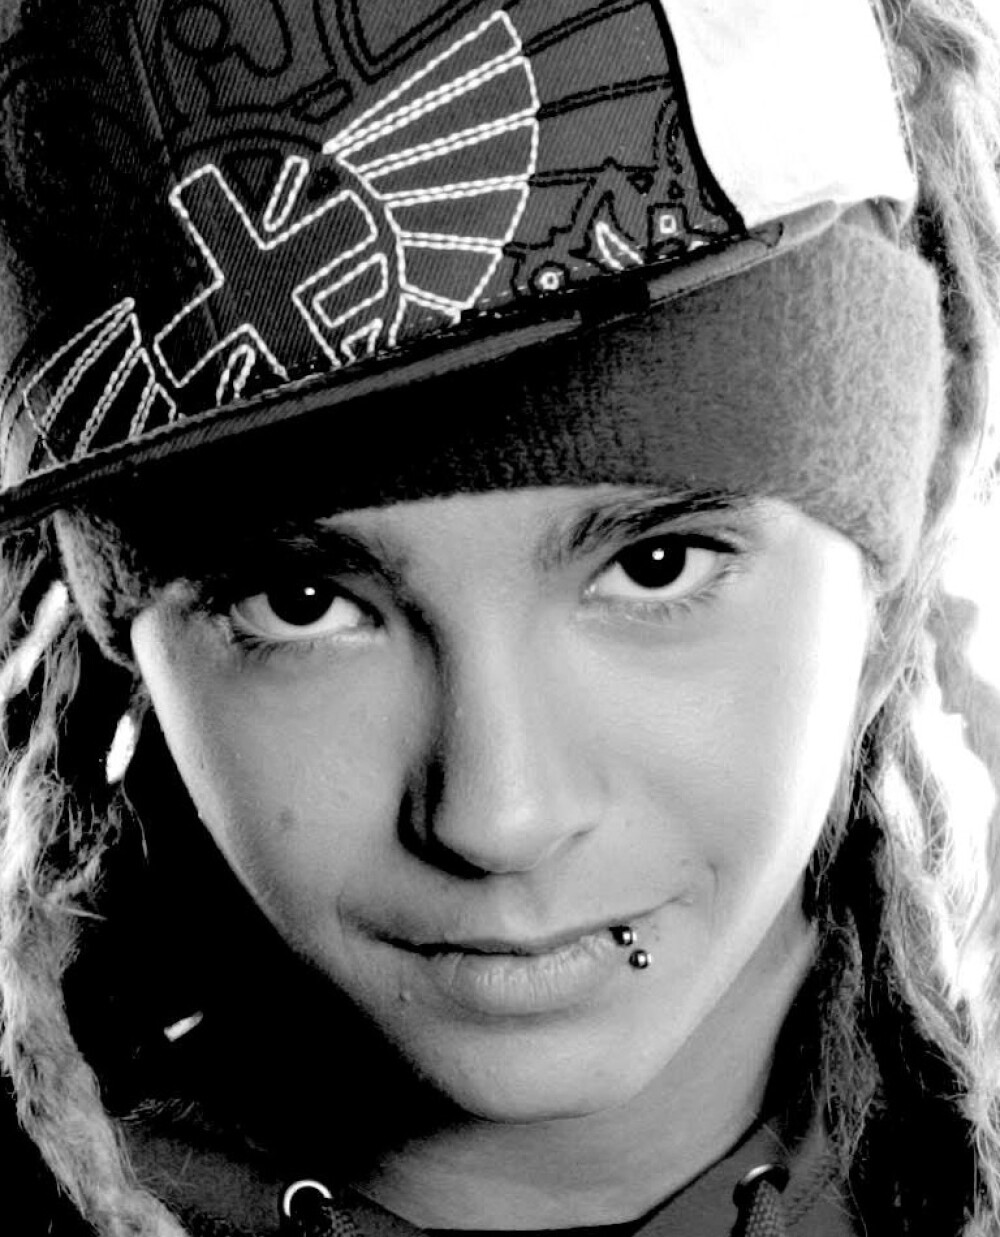 Chitaristul de la Tokio Hotel, acuzat ca ar fi agresat o tanara! - Imaginea 1